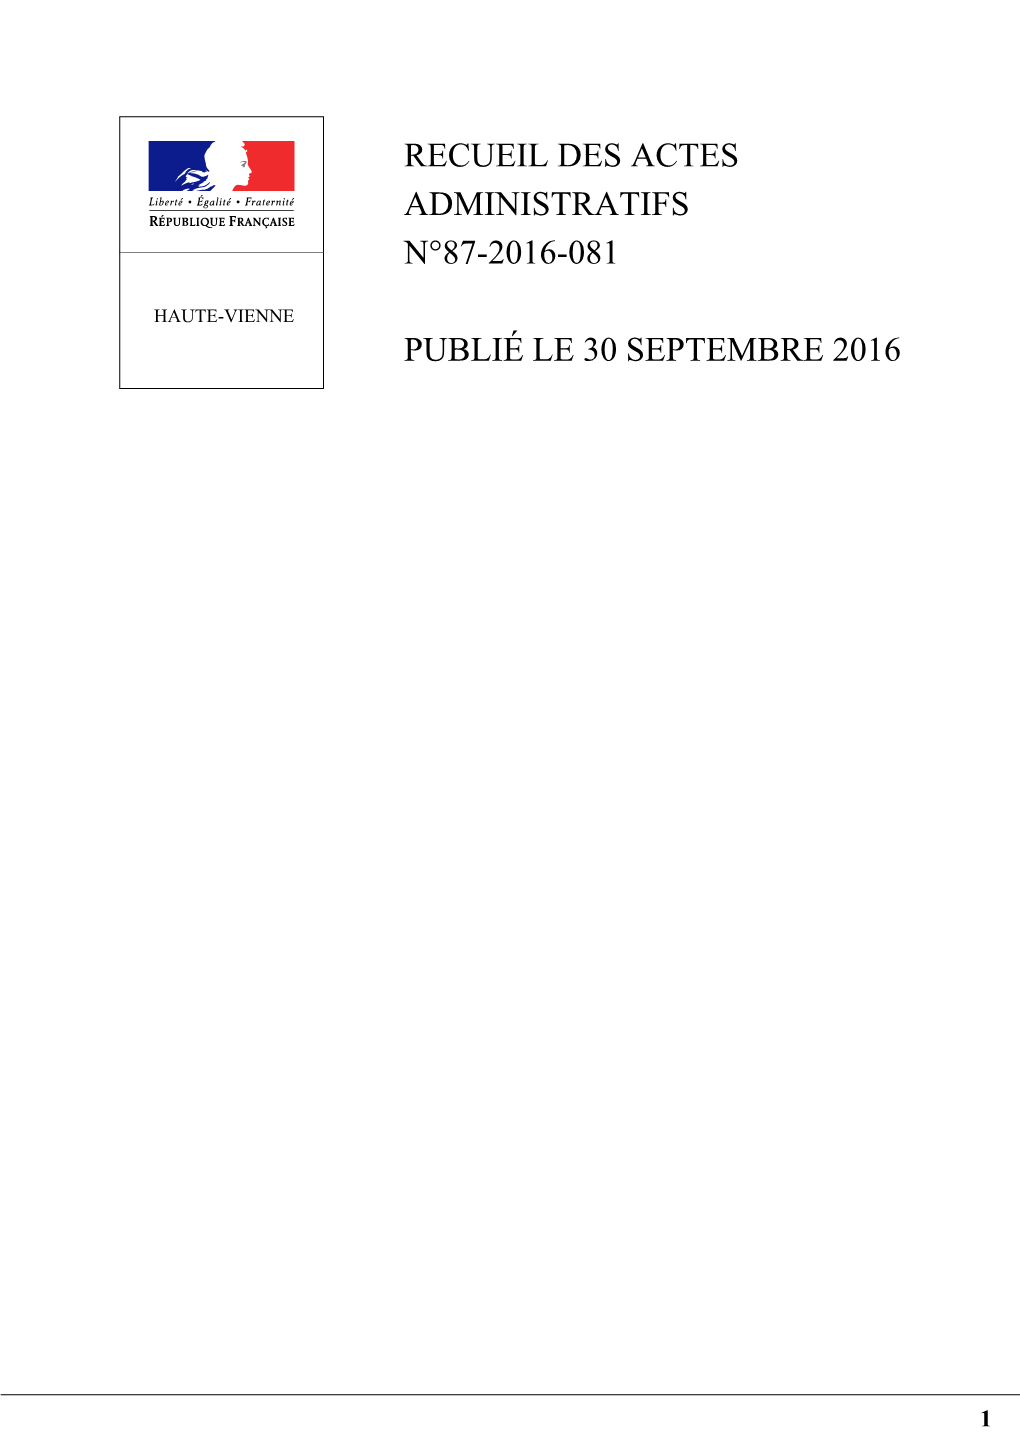 Recueil Des Actes Administratifs N°87-2016-081 Publié Le 30 Septembre 2016